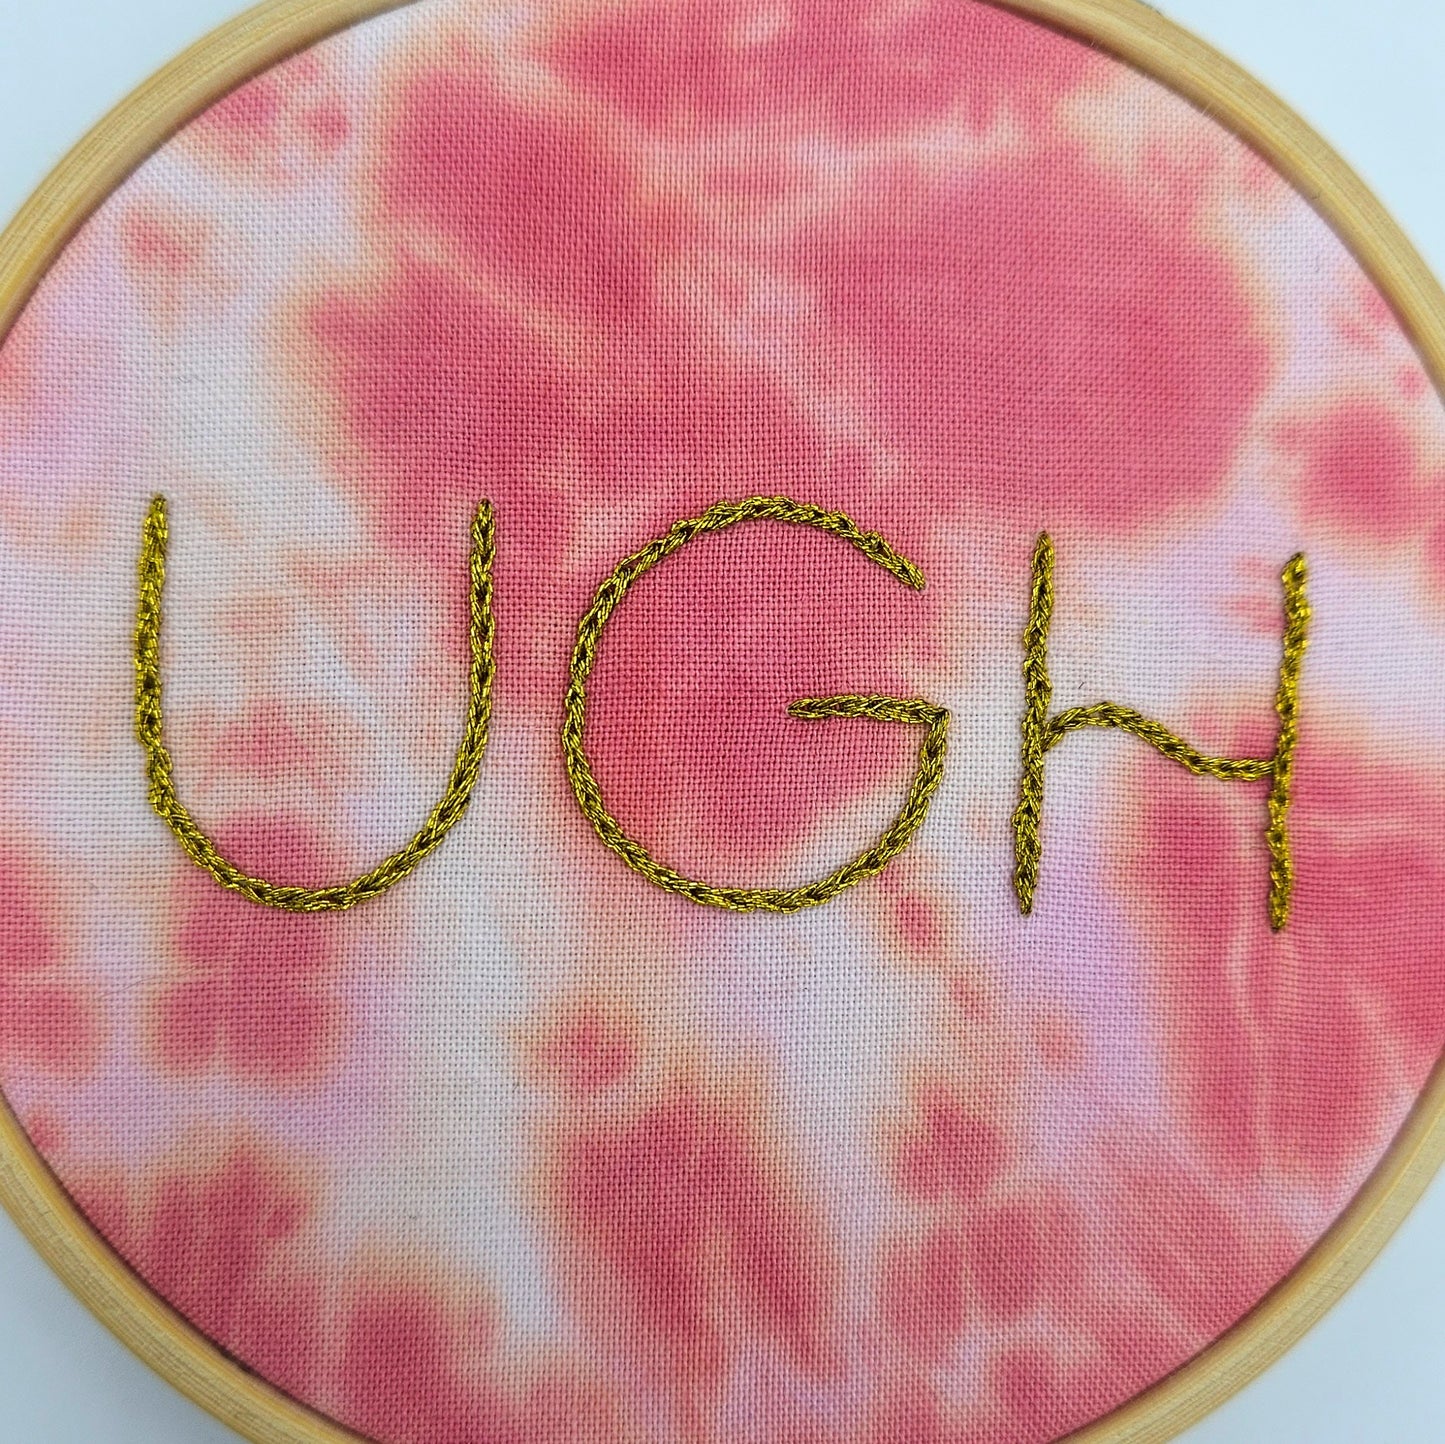 Metallic Gold & Pink Tie-Dye Ugh Embroidery Hoop Art